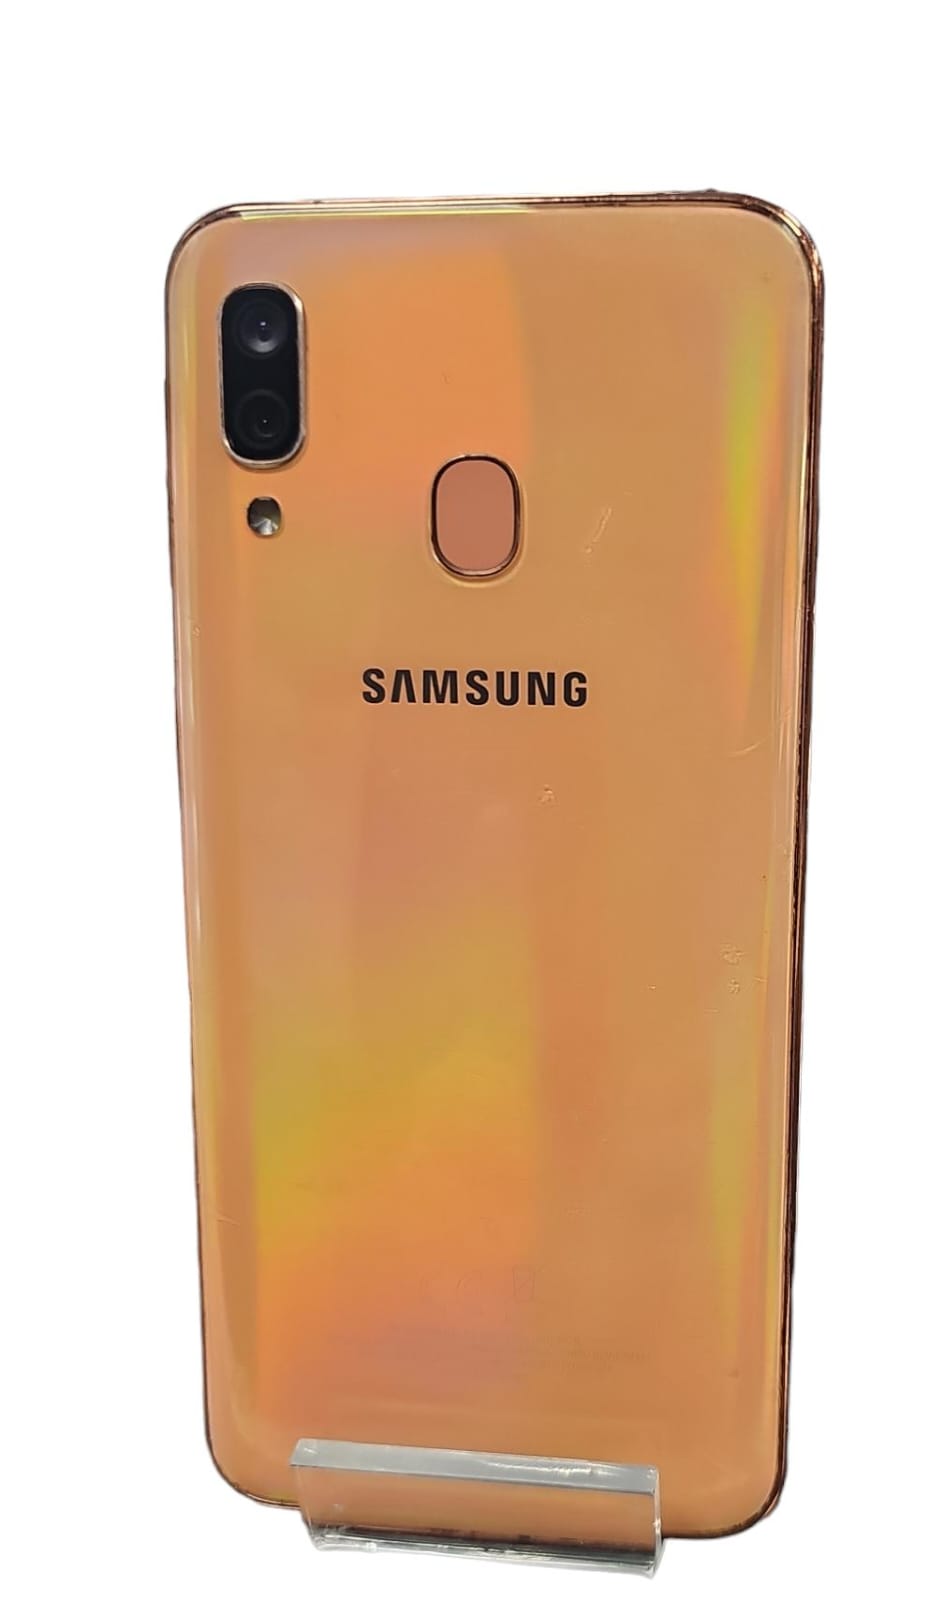 Samsung Galaxy A40 coral 64gb